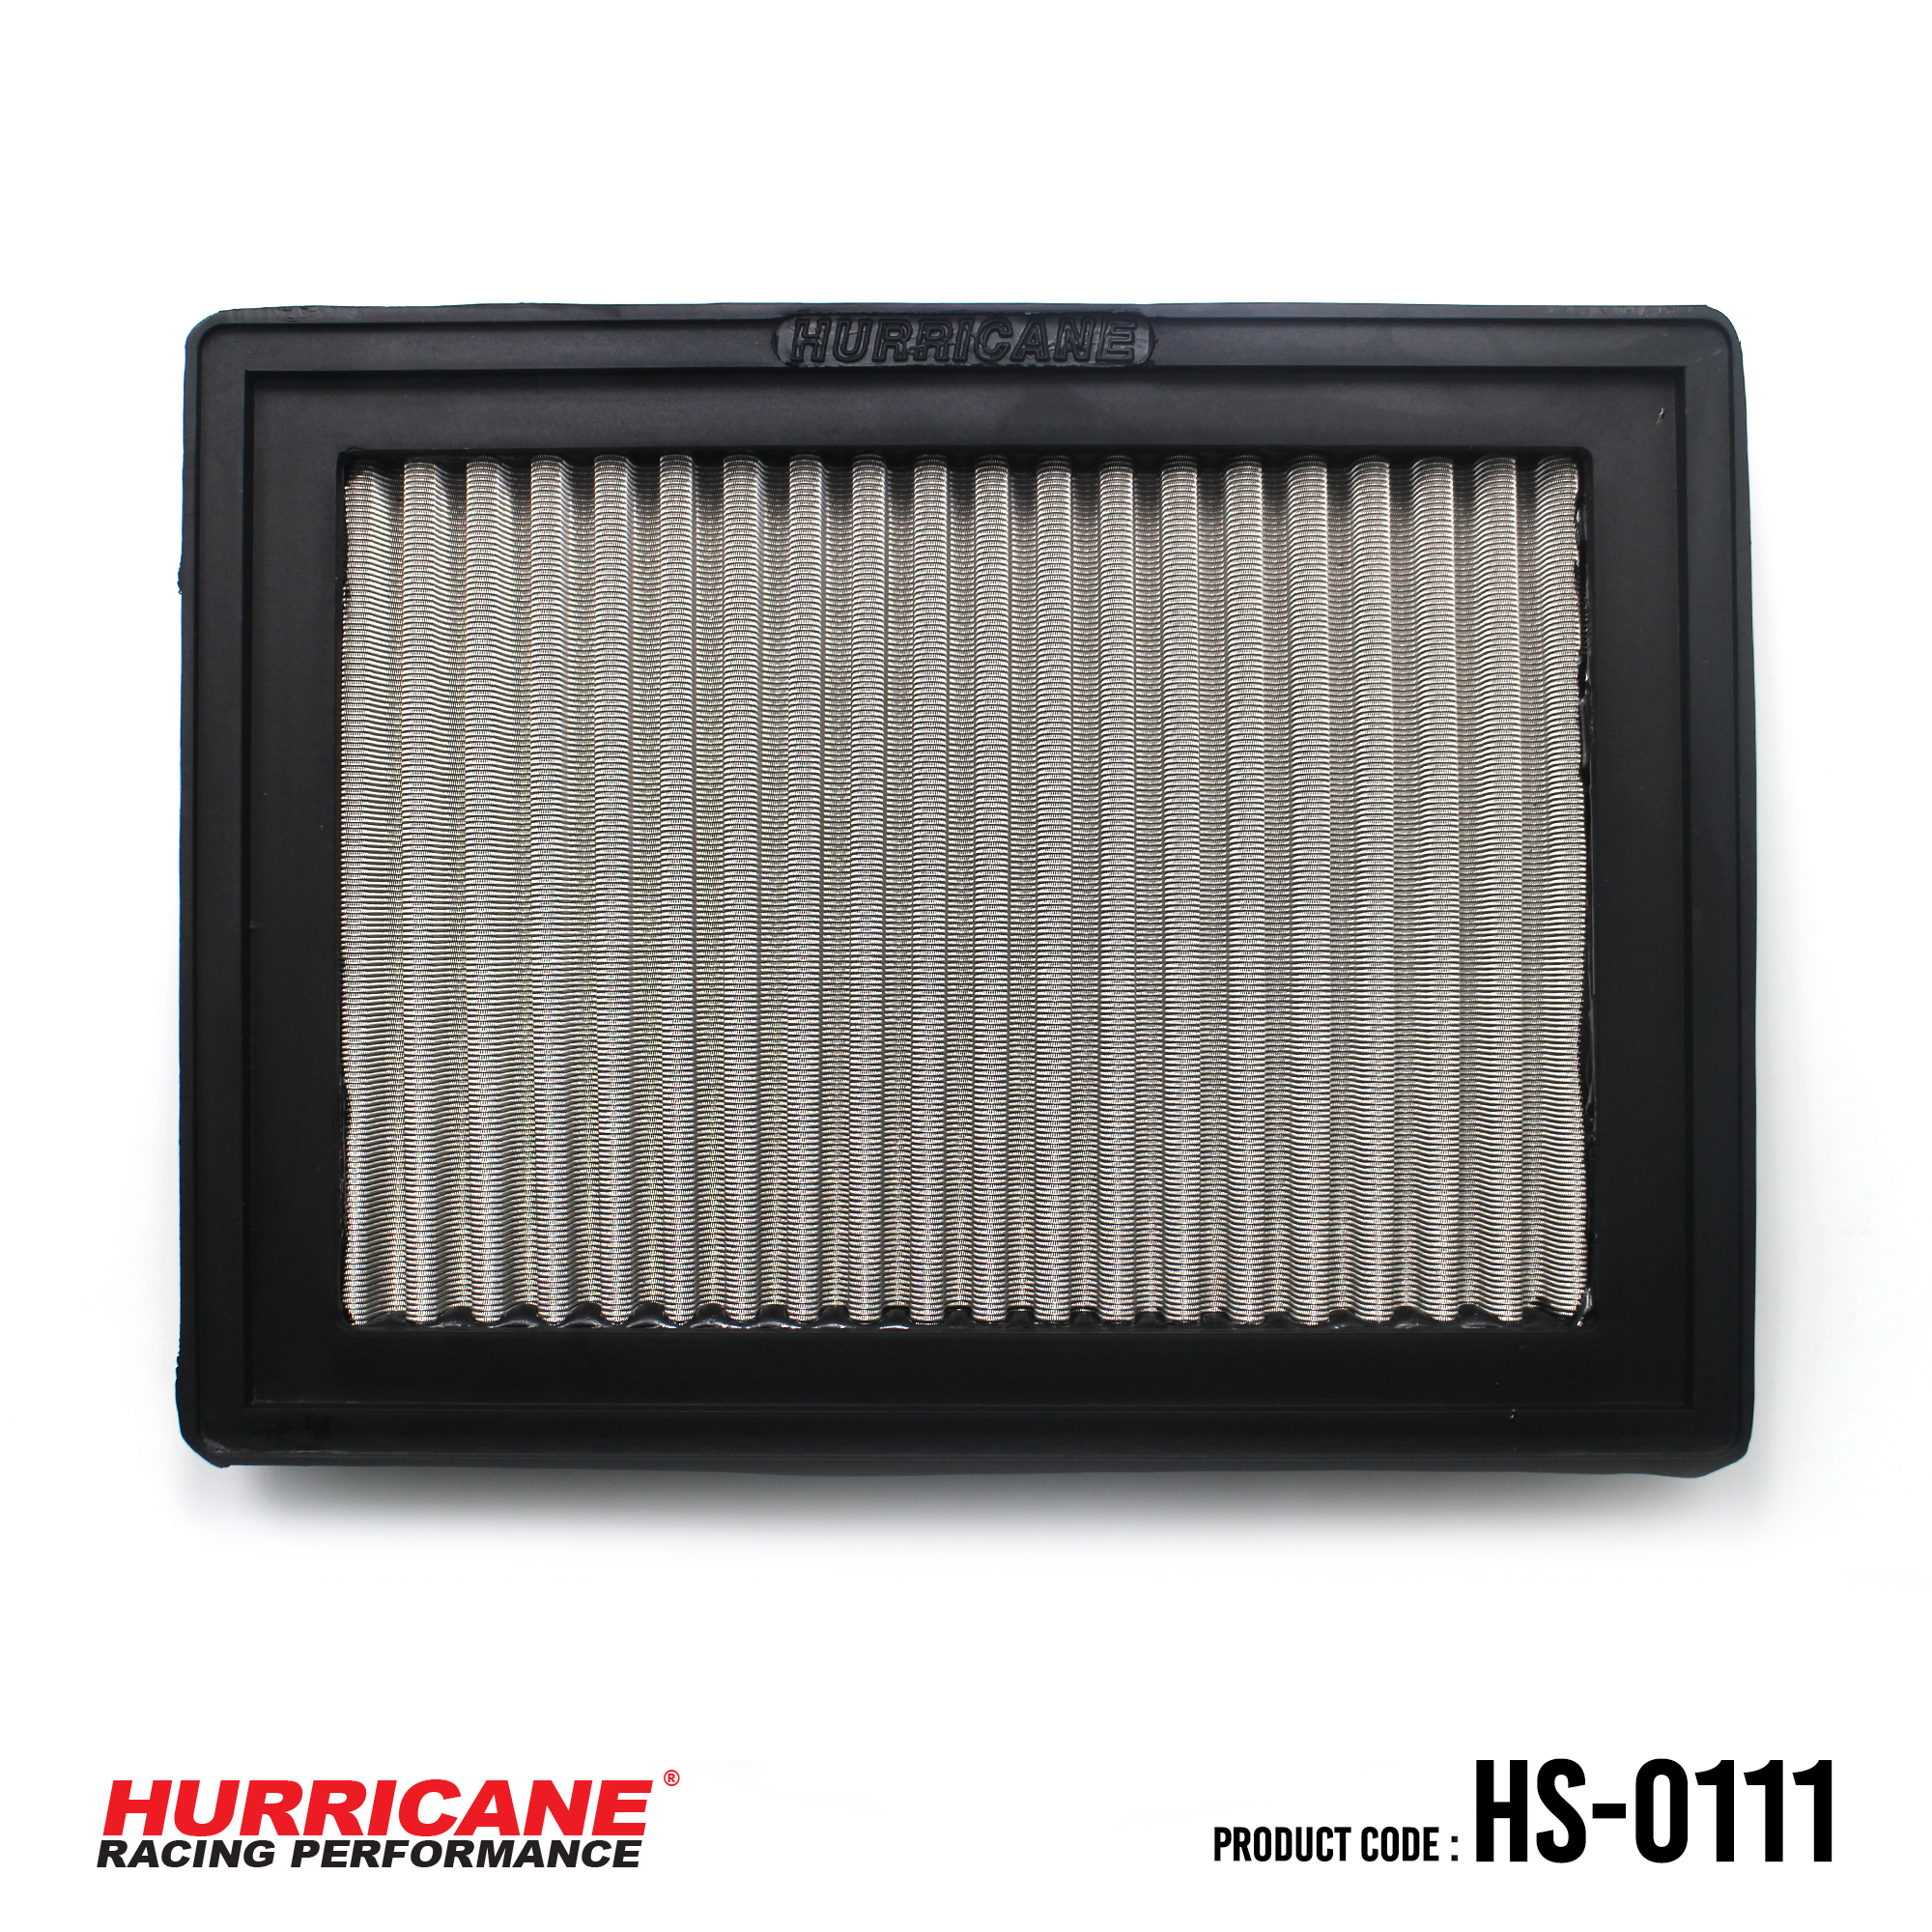 HURRICANE STAINLESS STEEL AIR FILTER FOR HS-0111 HondaNissan